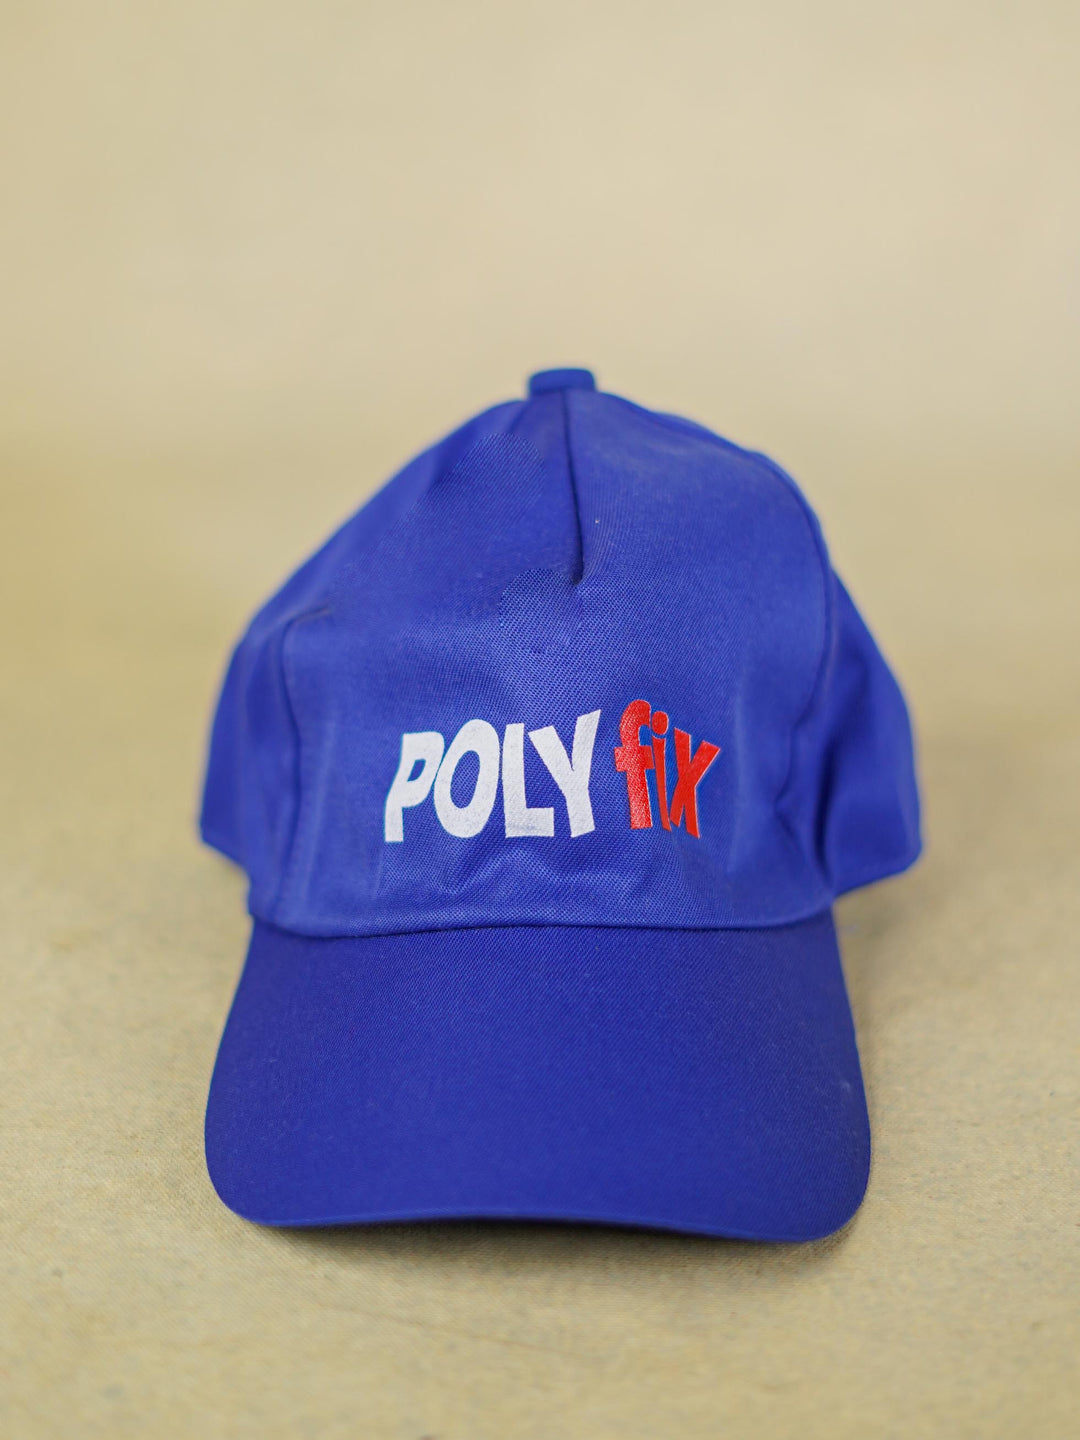 Poly Fix Printed Cap - BCG0115-9